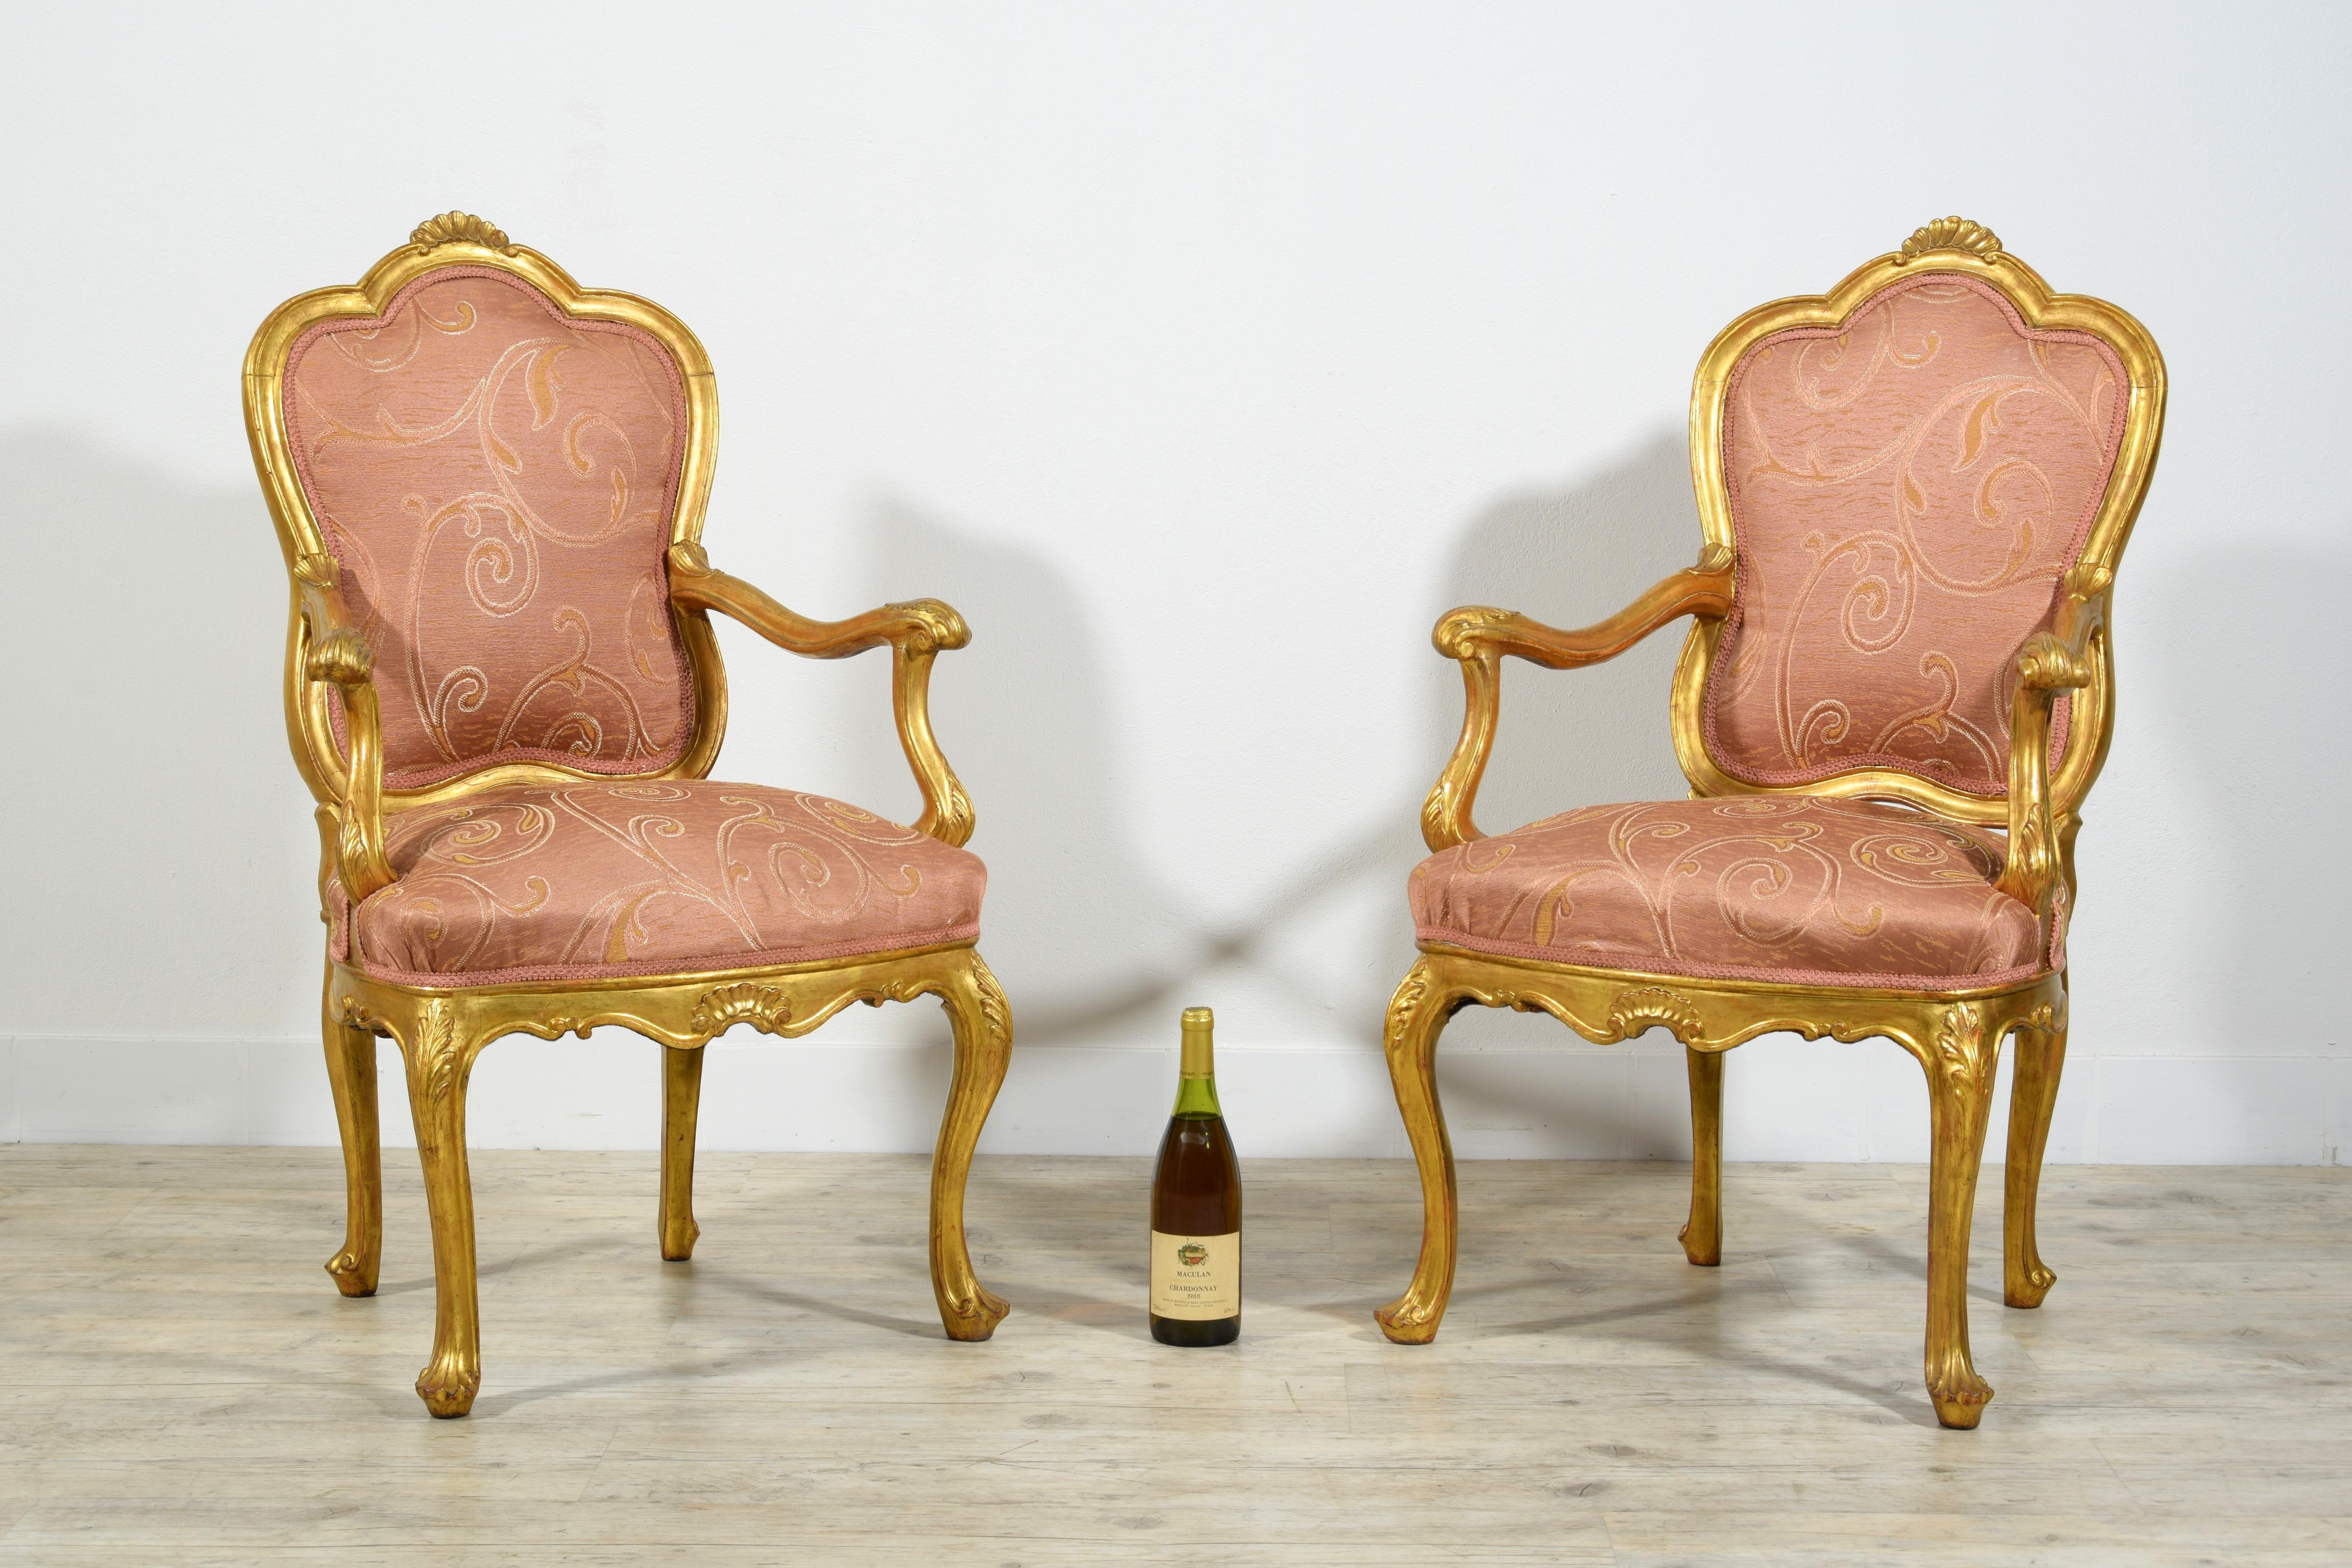 19ème siècle, paire de fauteuils italiens en bois doré 
Cette paire de fauteuils raffinés a été réalisée au début du XIXe siècle à Venise (Italie), en bois doré, finement sculpté de motifs rocaille caractéristiques de l'époque Louis XV. Les